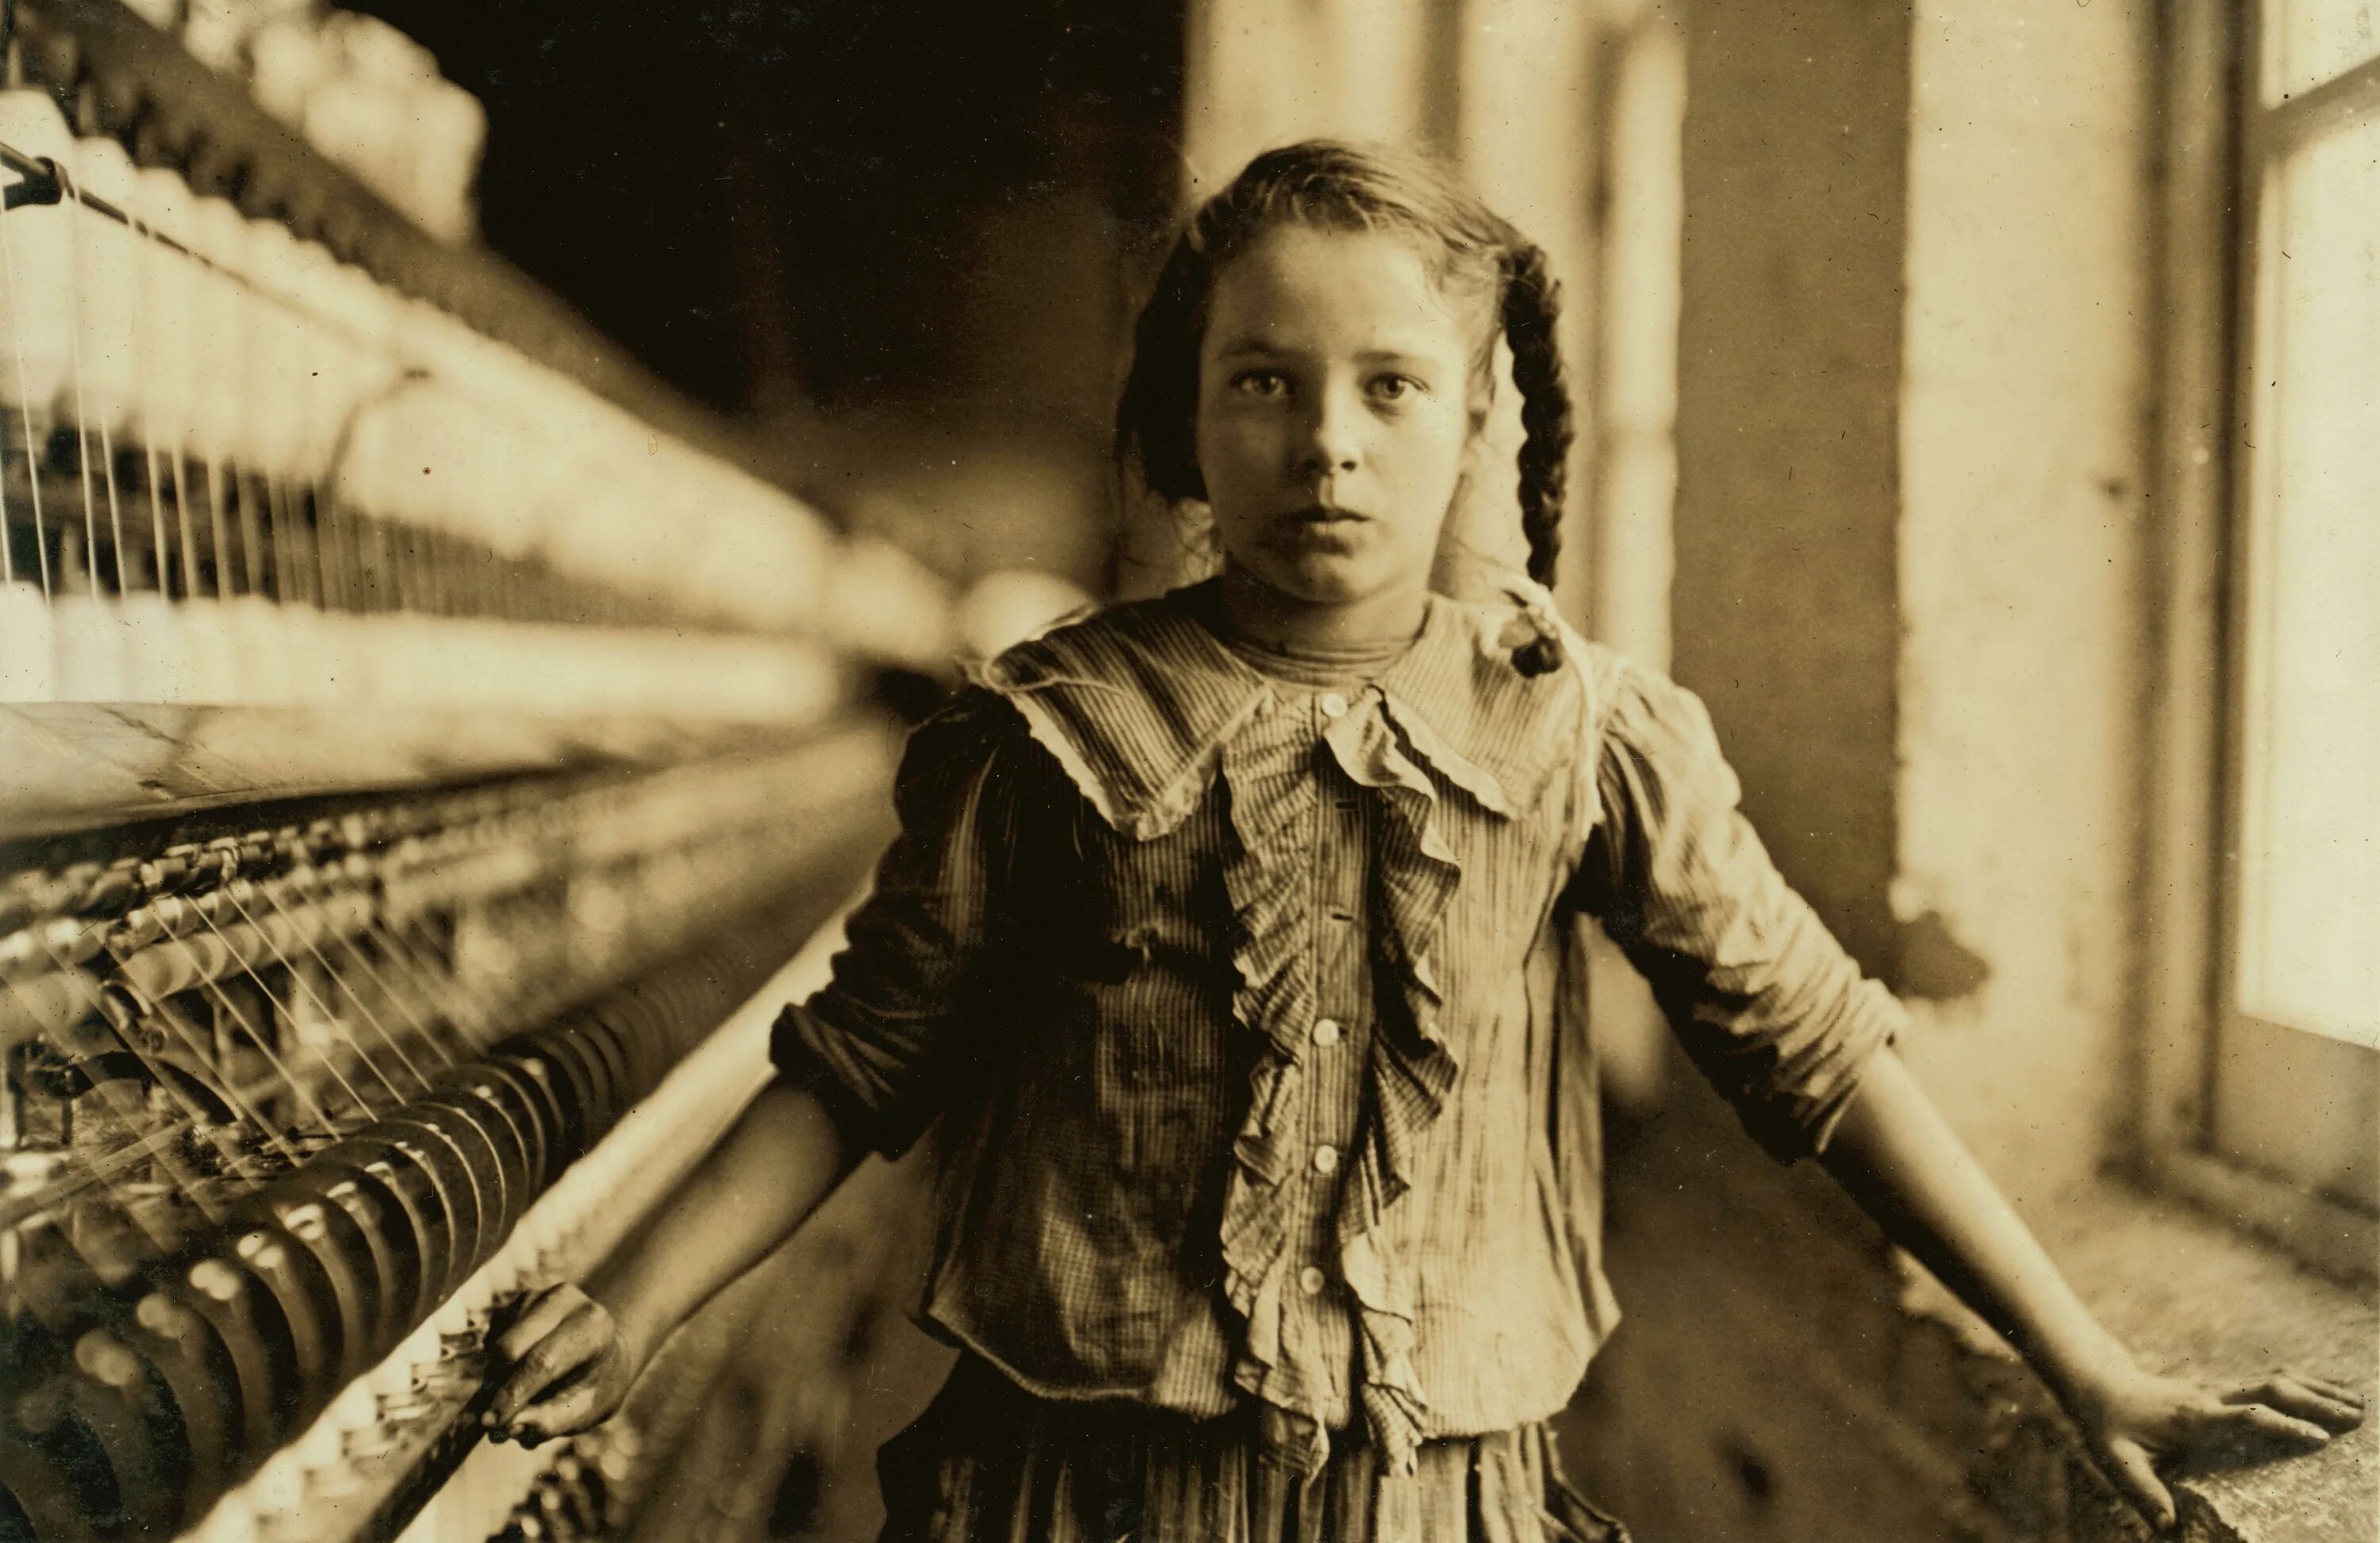 Ретро малолетних. Льюис Хайн фотограф труд. Льюис Хайн американский фотограф детский труд. Девочка с фабрики хлопка, Льюис Хайн. 1908 Год. Льюис Хайн американский фотограф.